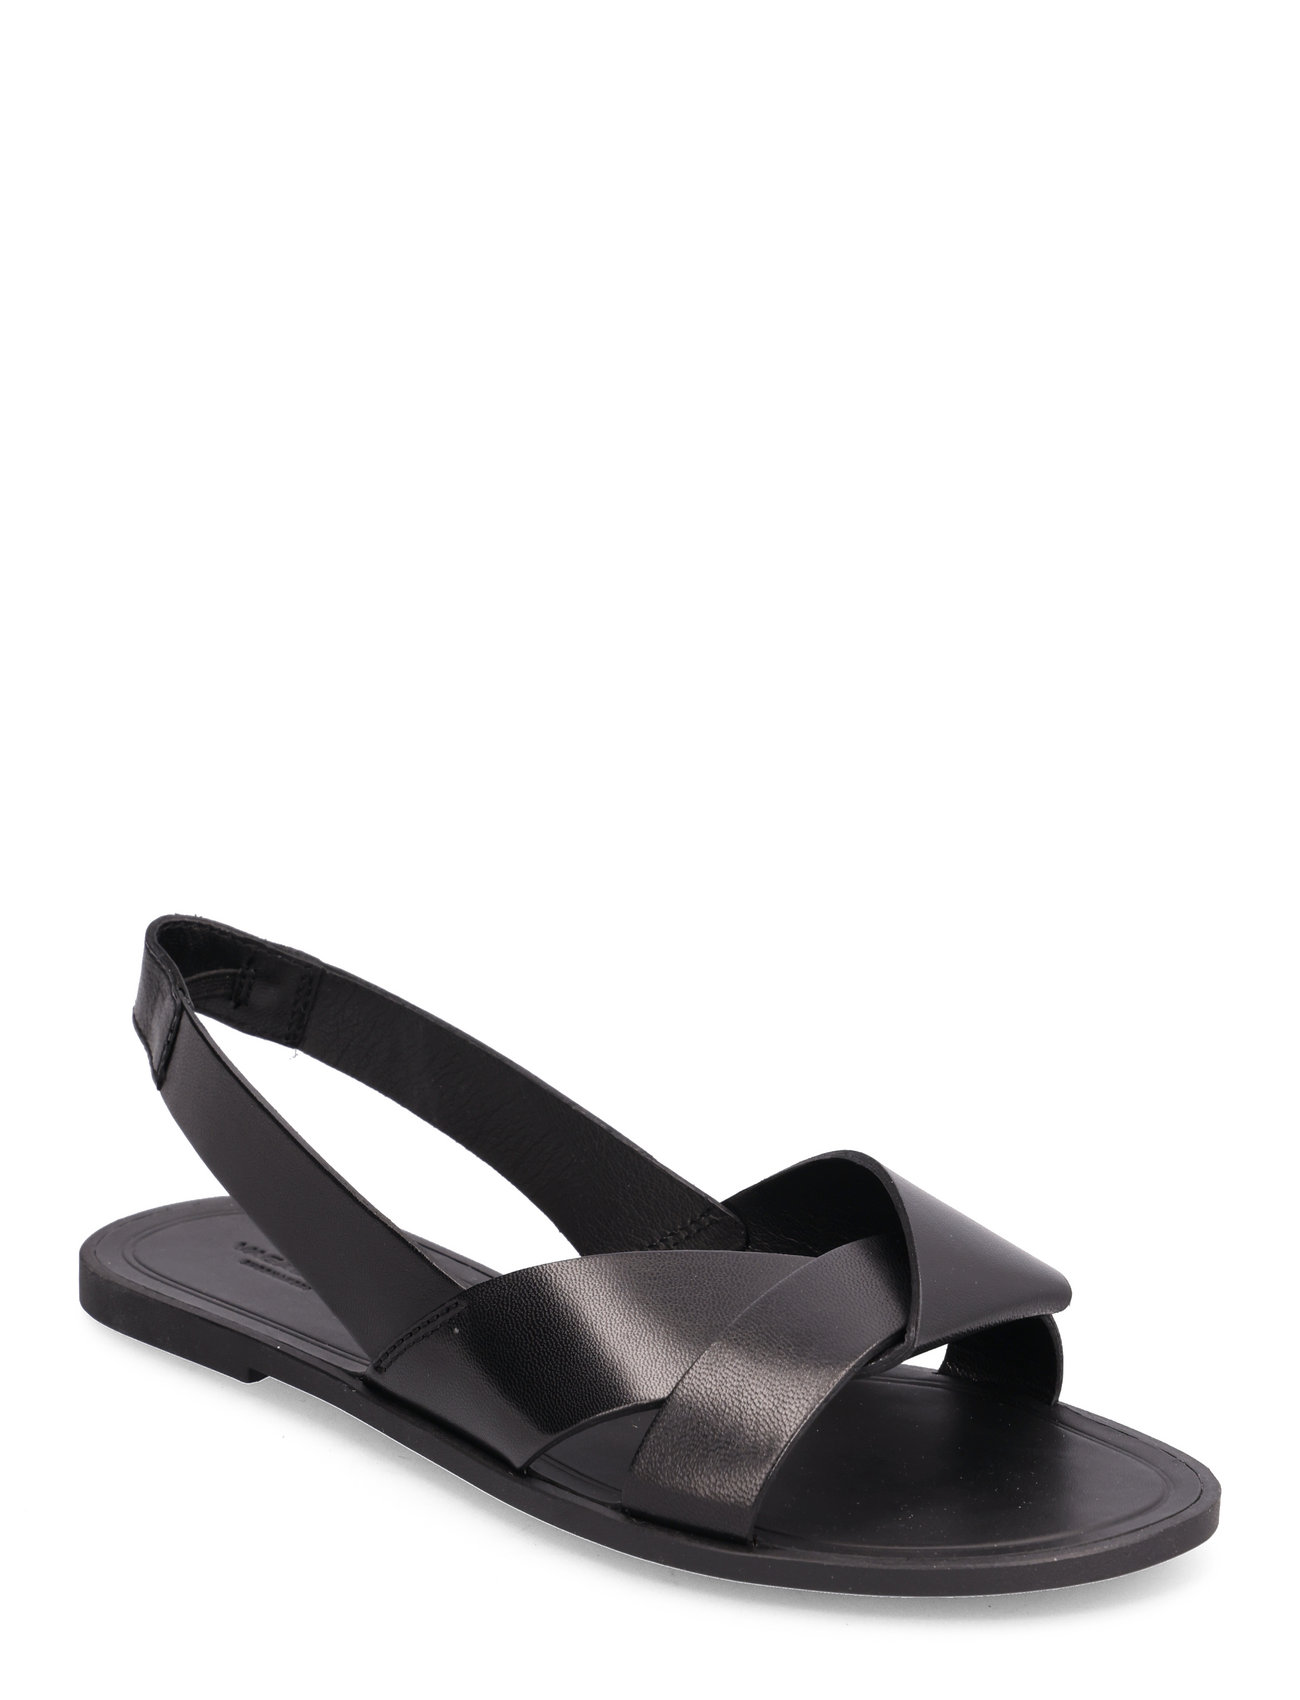 VAGABOND Tia 2.0 - Flat sandals